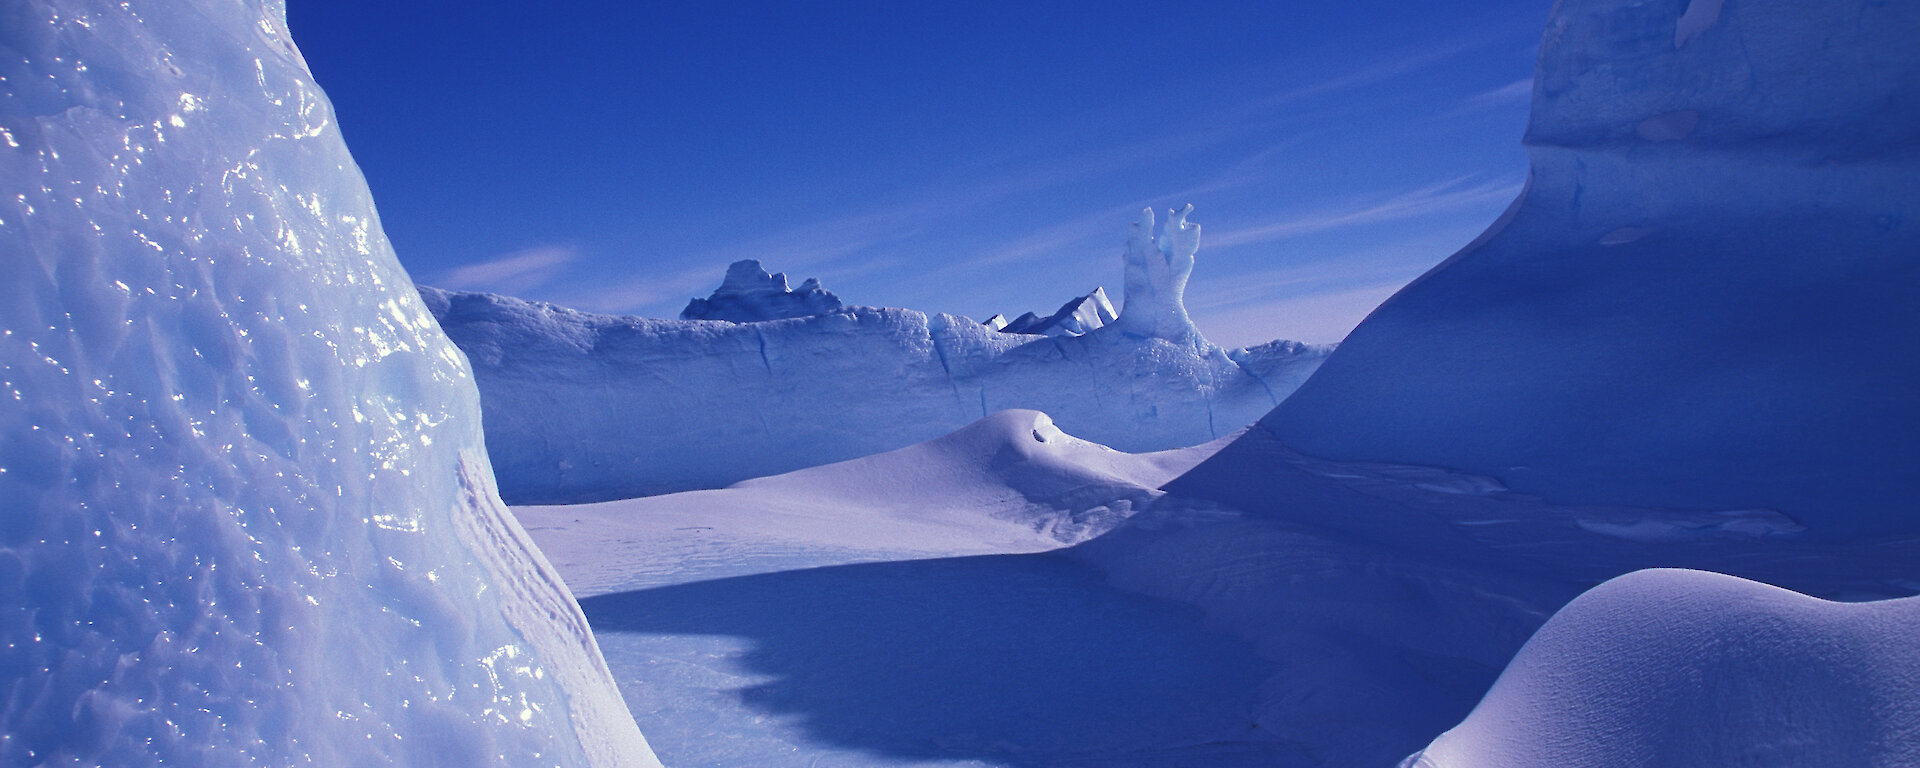 Alien icescape in Antarctica